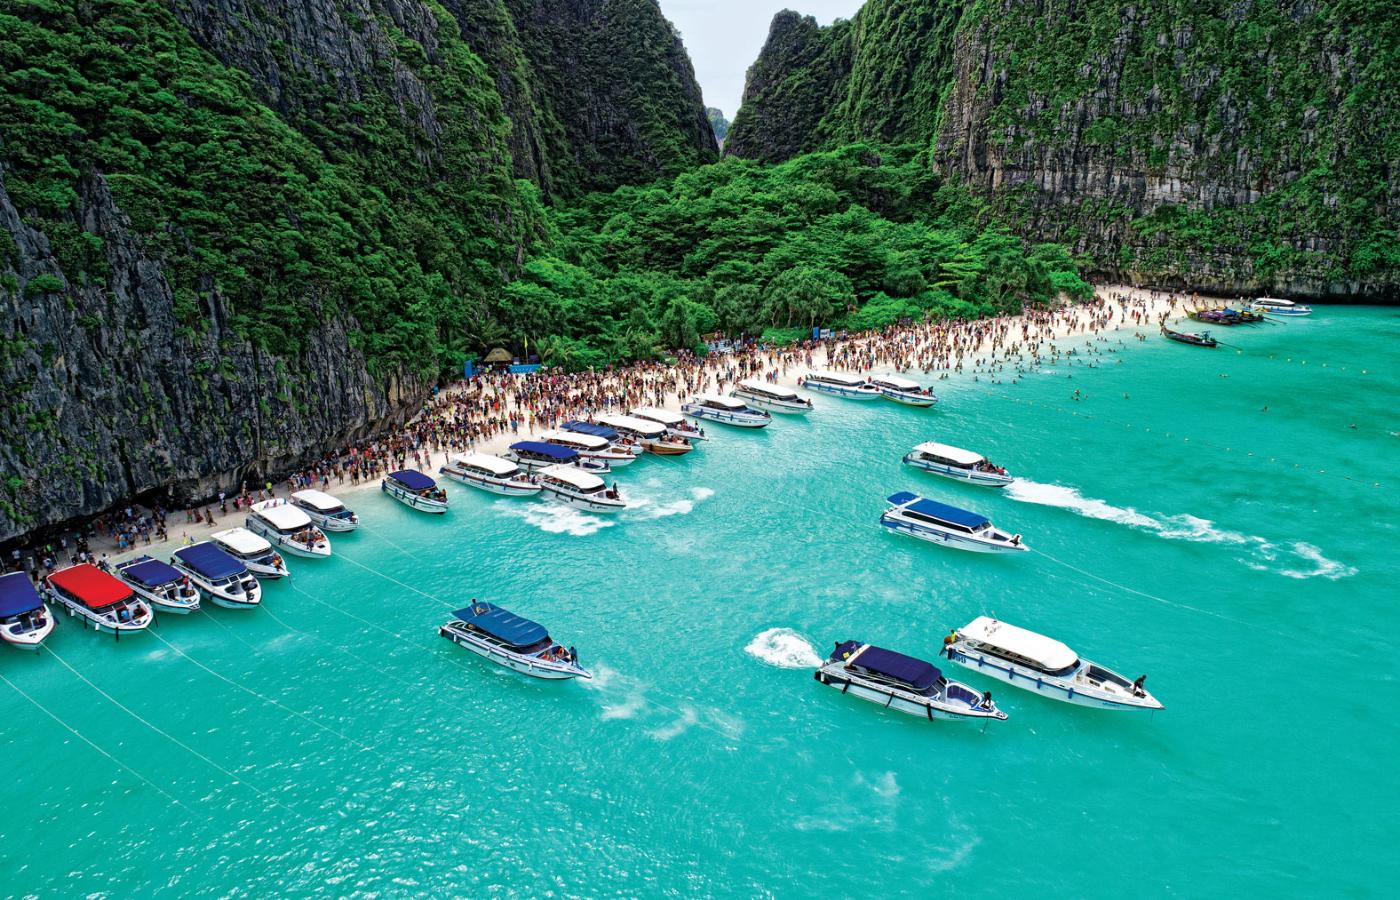 Niebiańska Plaża (Maya Bay) w Tajlandii. Najbardziej oblegane atrakcje zostały objęte restrykcjami. W wielu miejscach już ograniczono liczbę turystów. Maya Bay po prostu zamknięto.